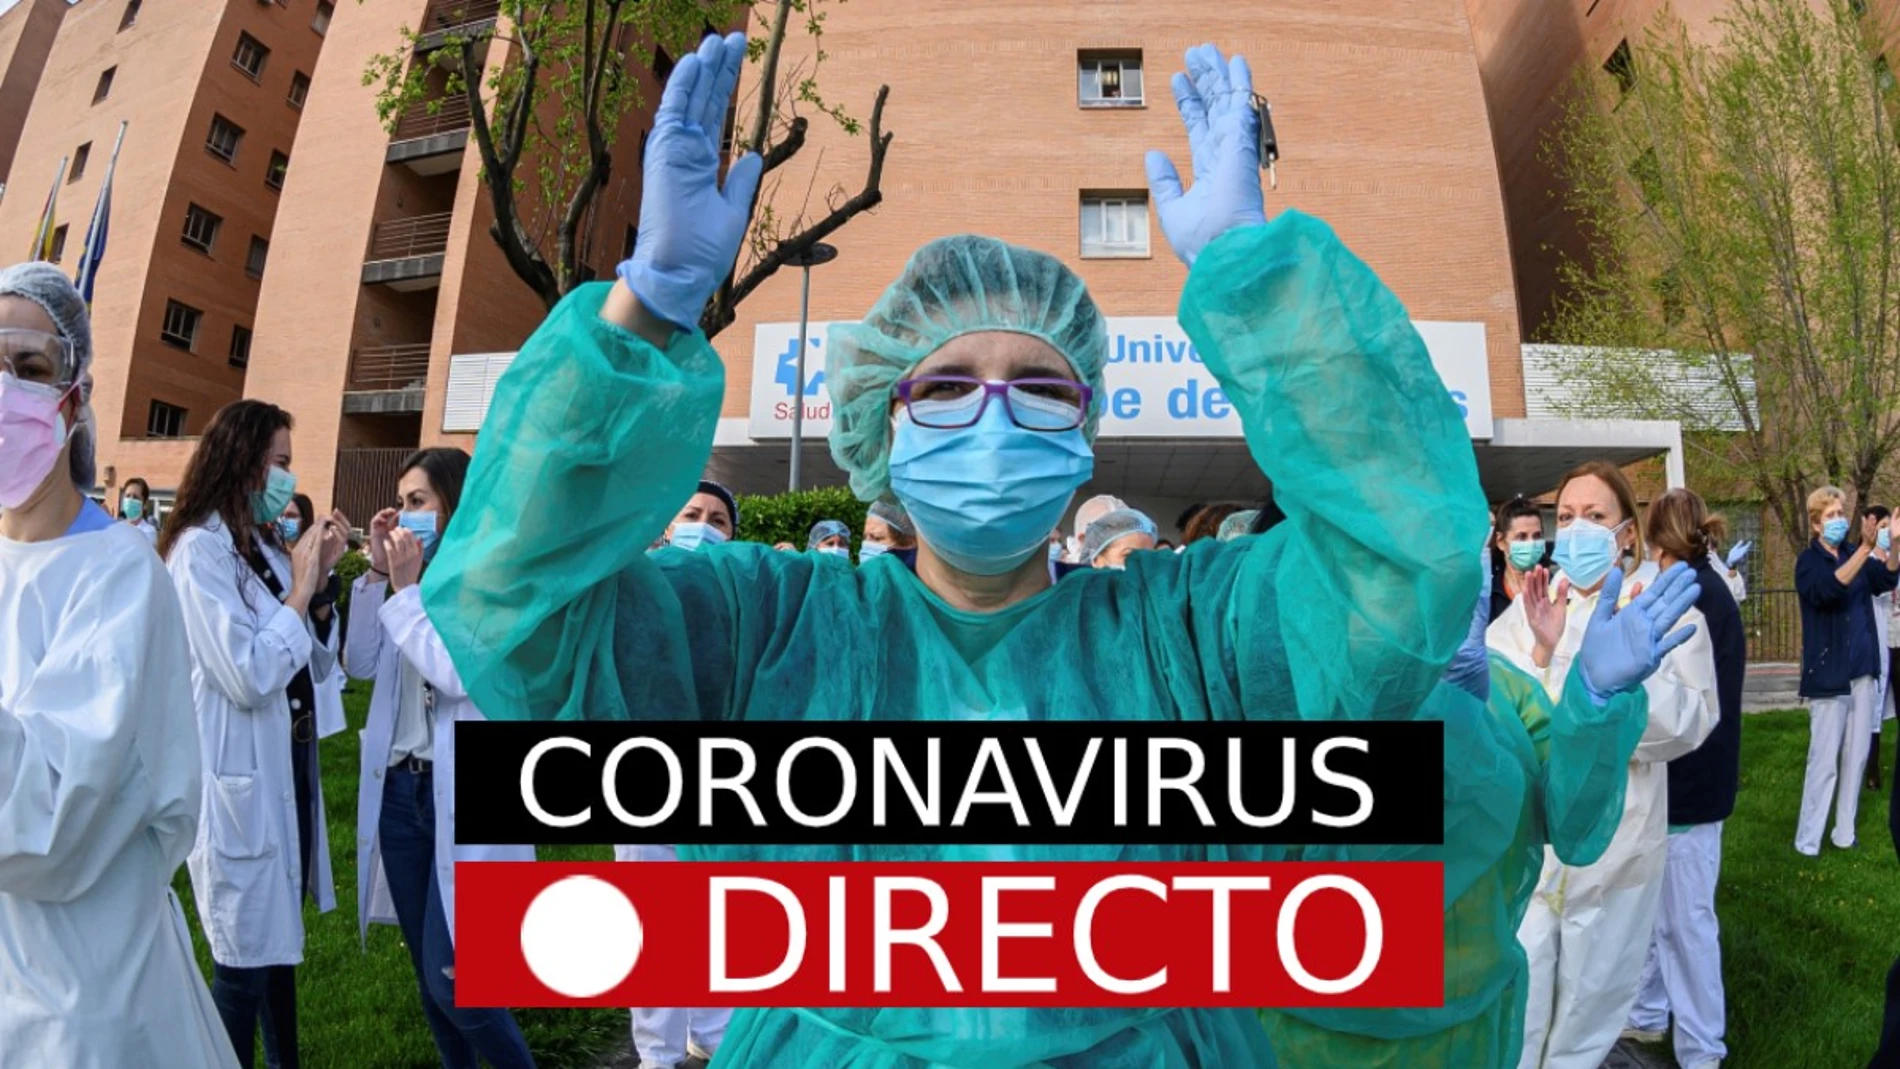 Última hora del coronavirus en España hoy, noticias y datos en directo